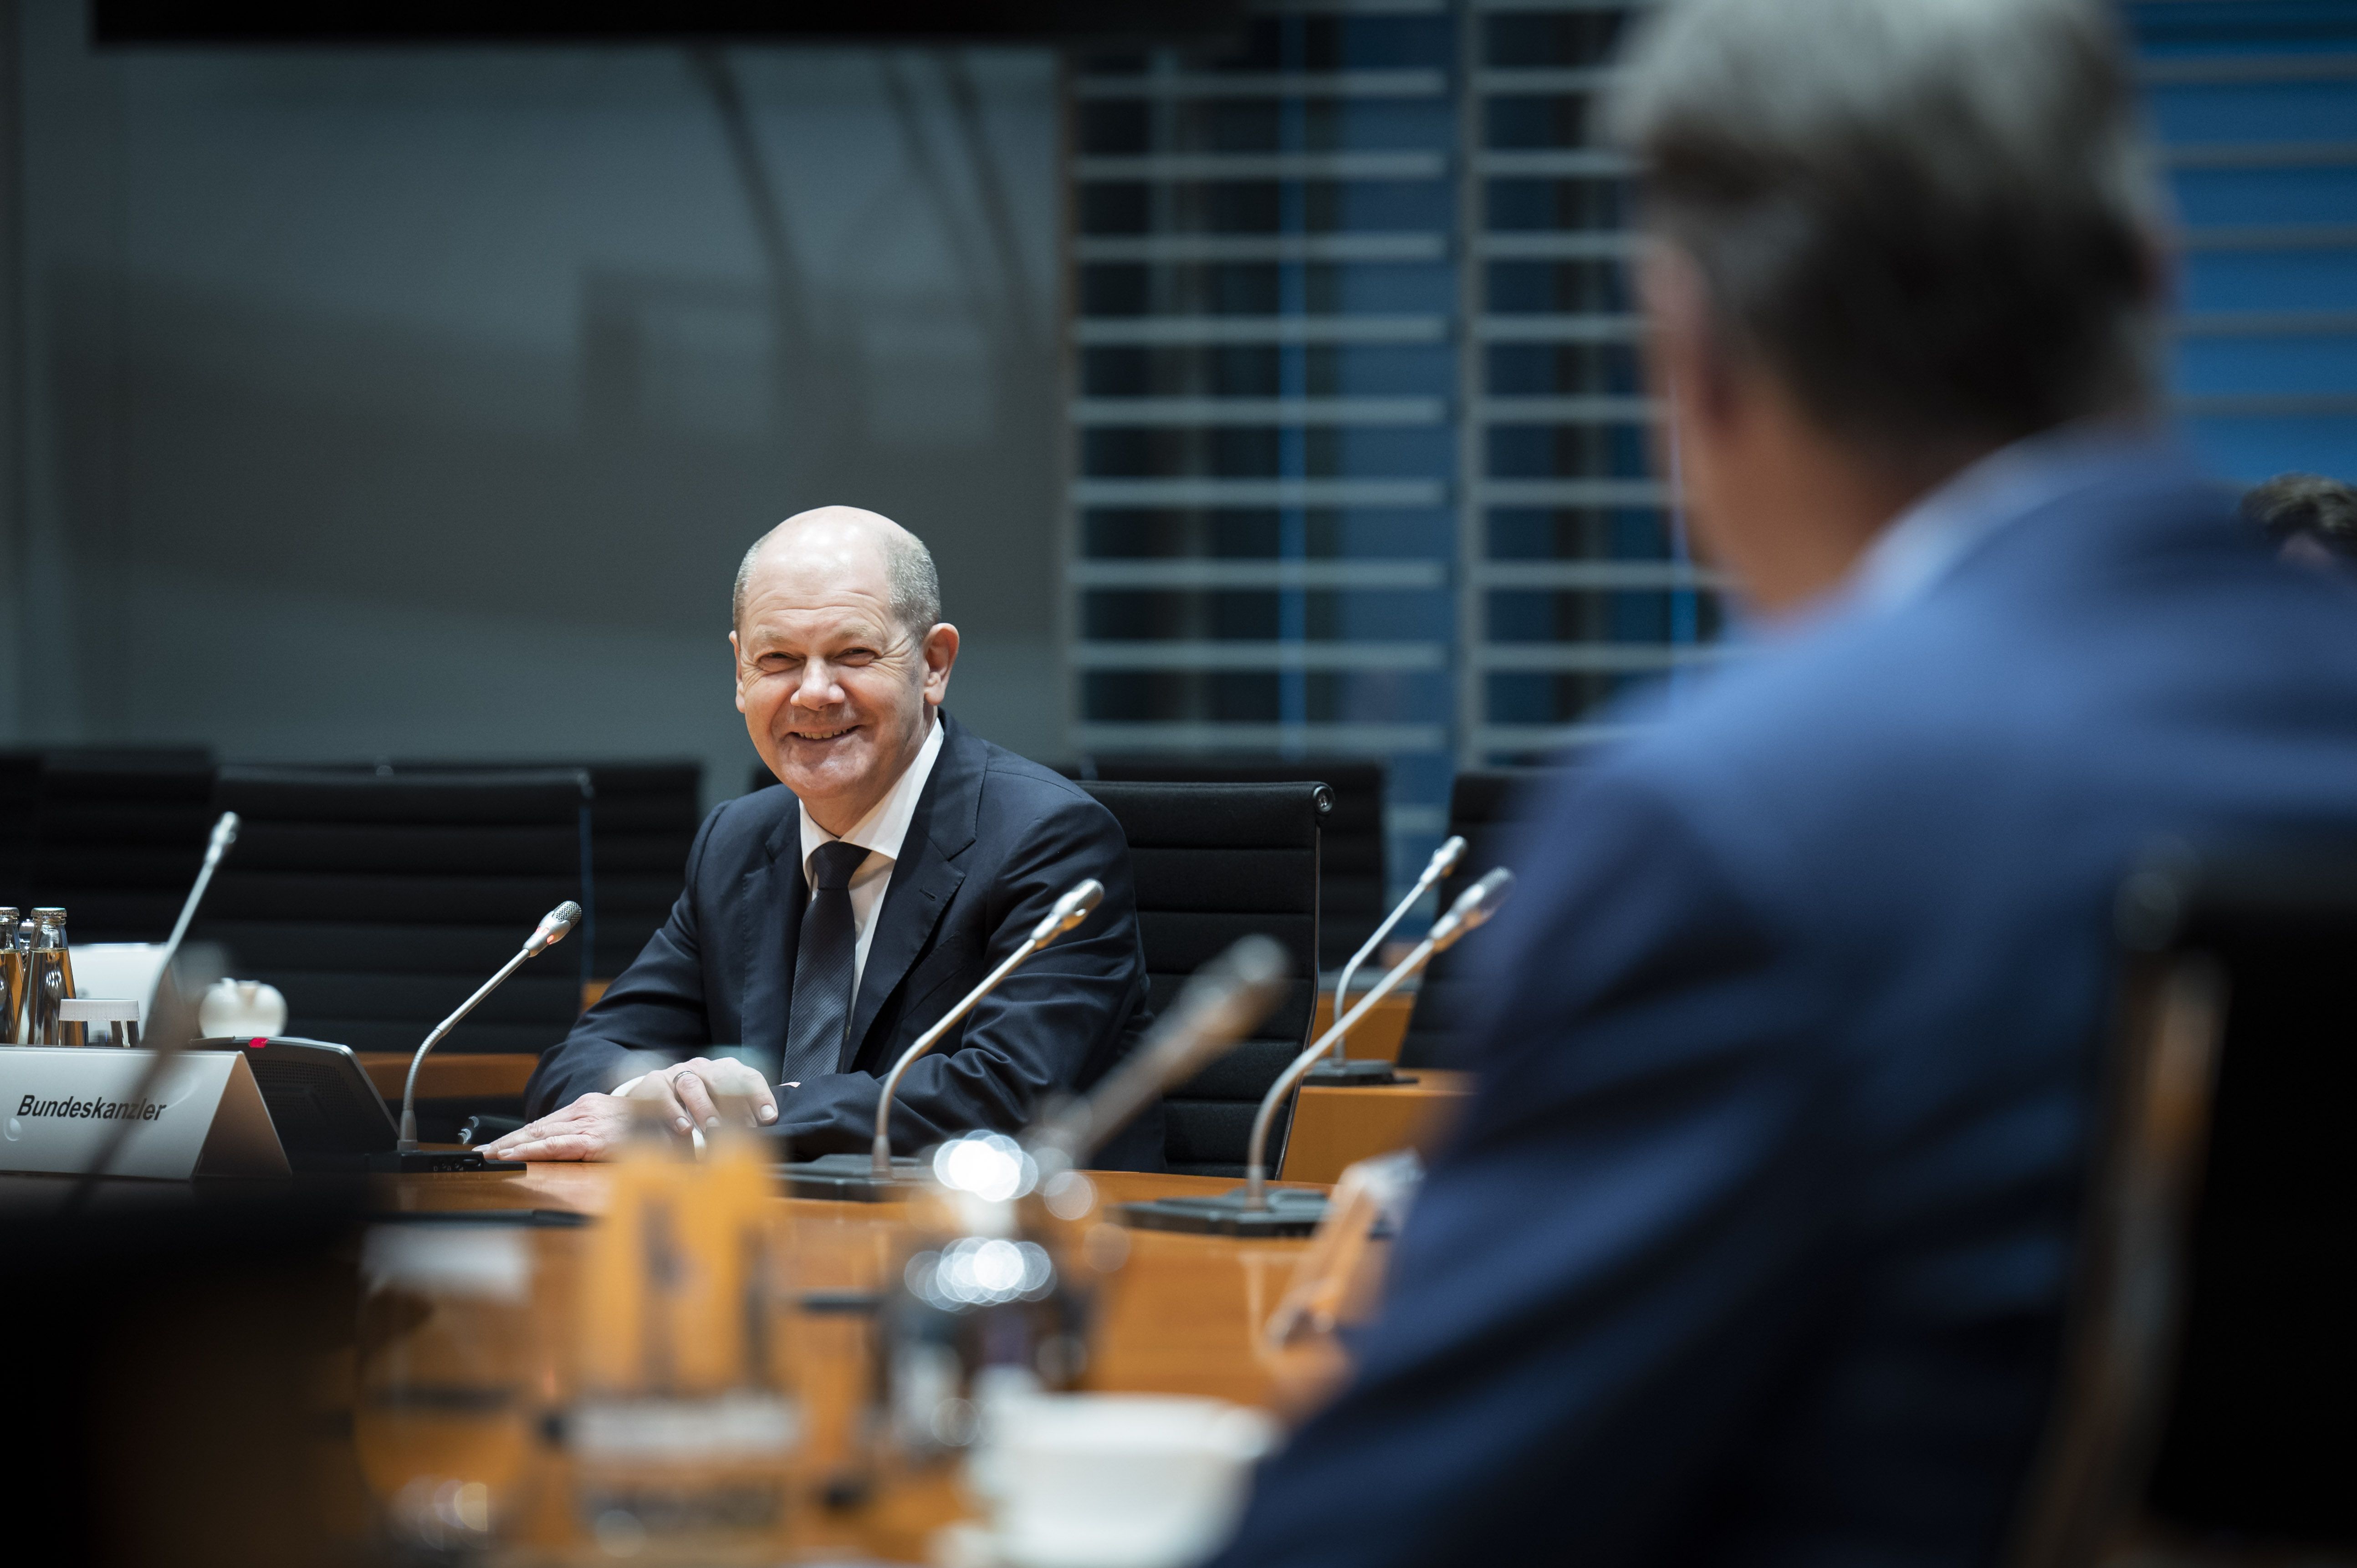 Bundeskanzler Olaf Scholz im Gespräch mit dem RVR-Kommunalrat beim Berlin-Ruhr-Dialog am 24. März im Bundeskanzleramt.